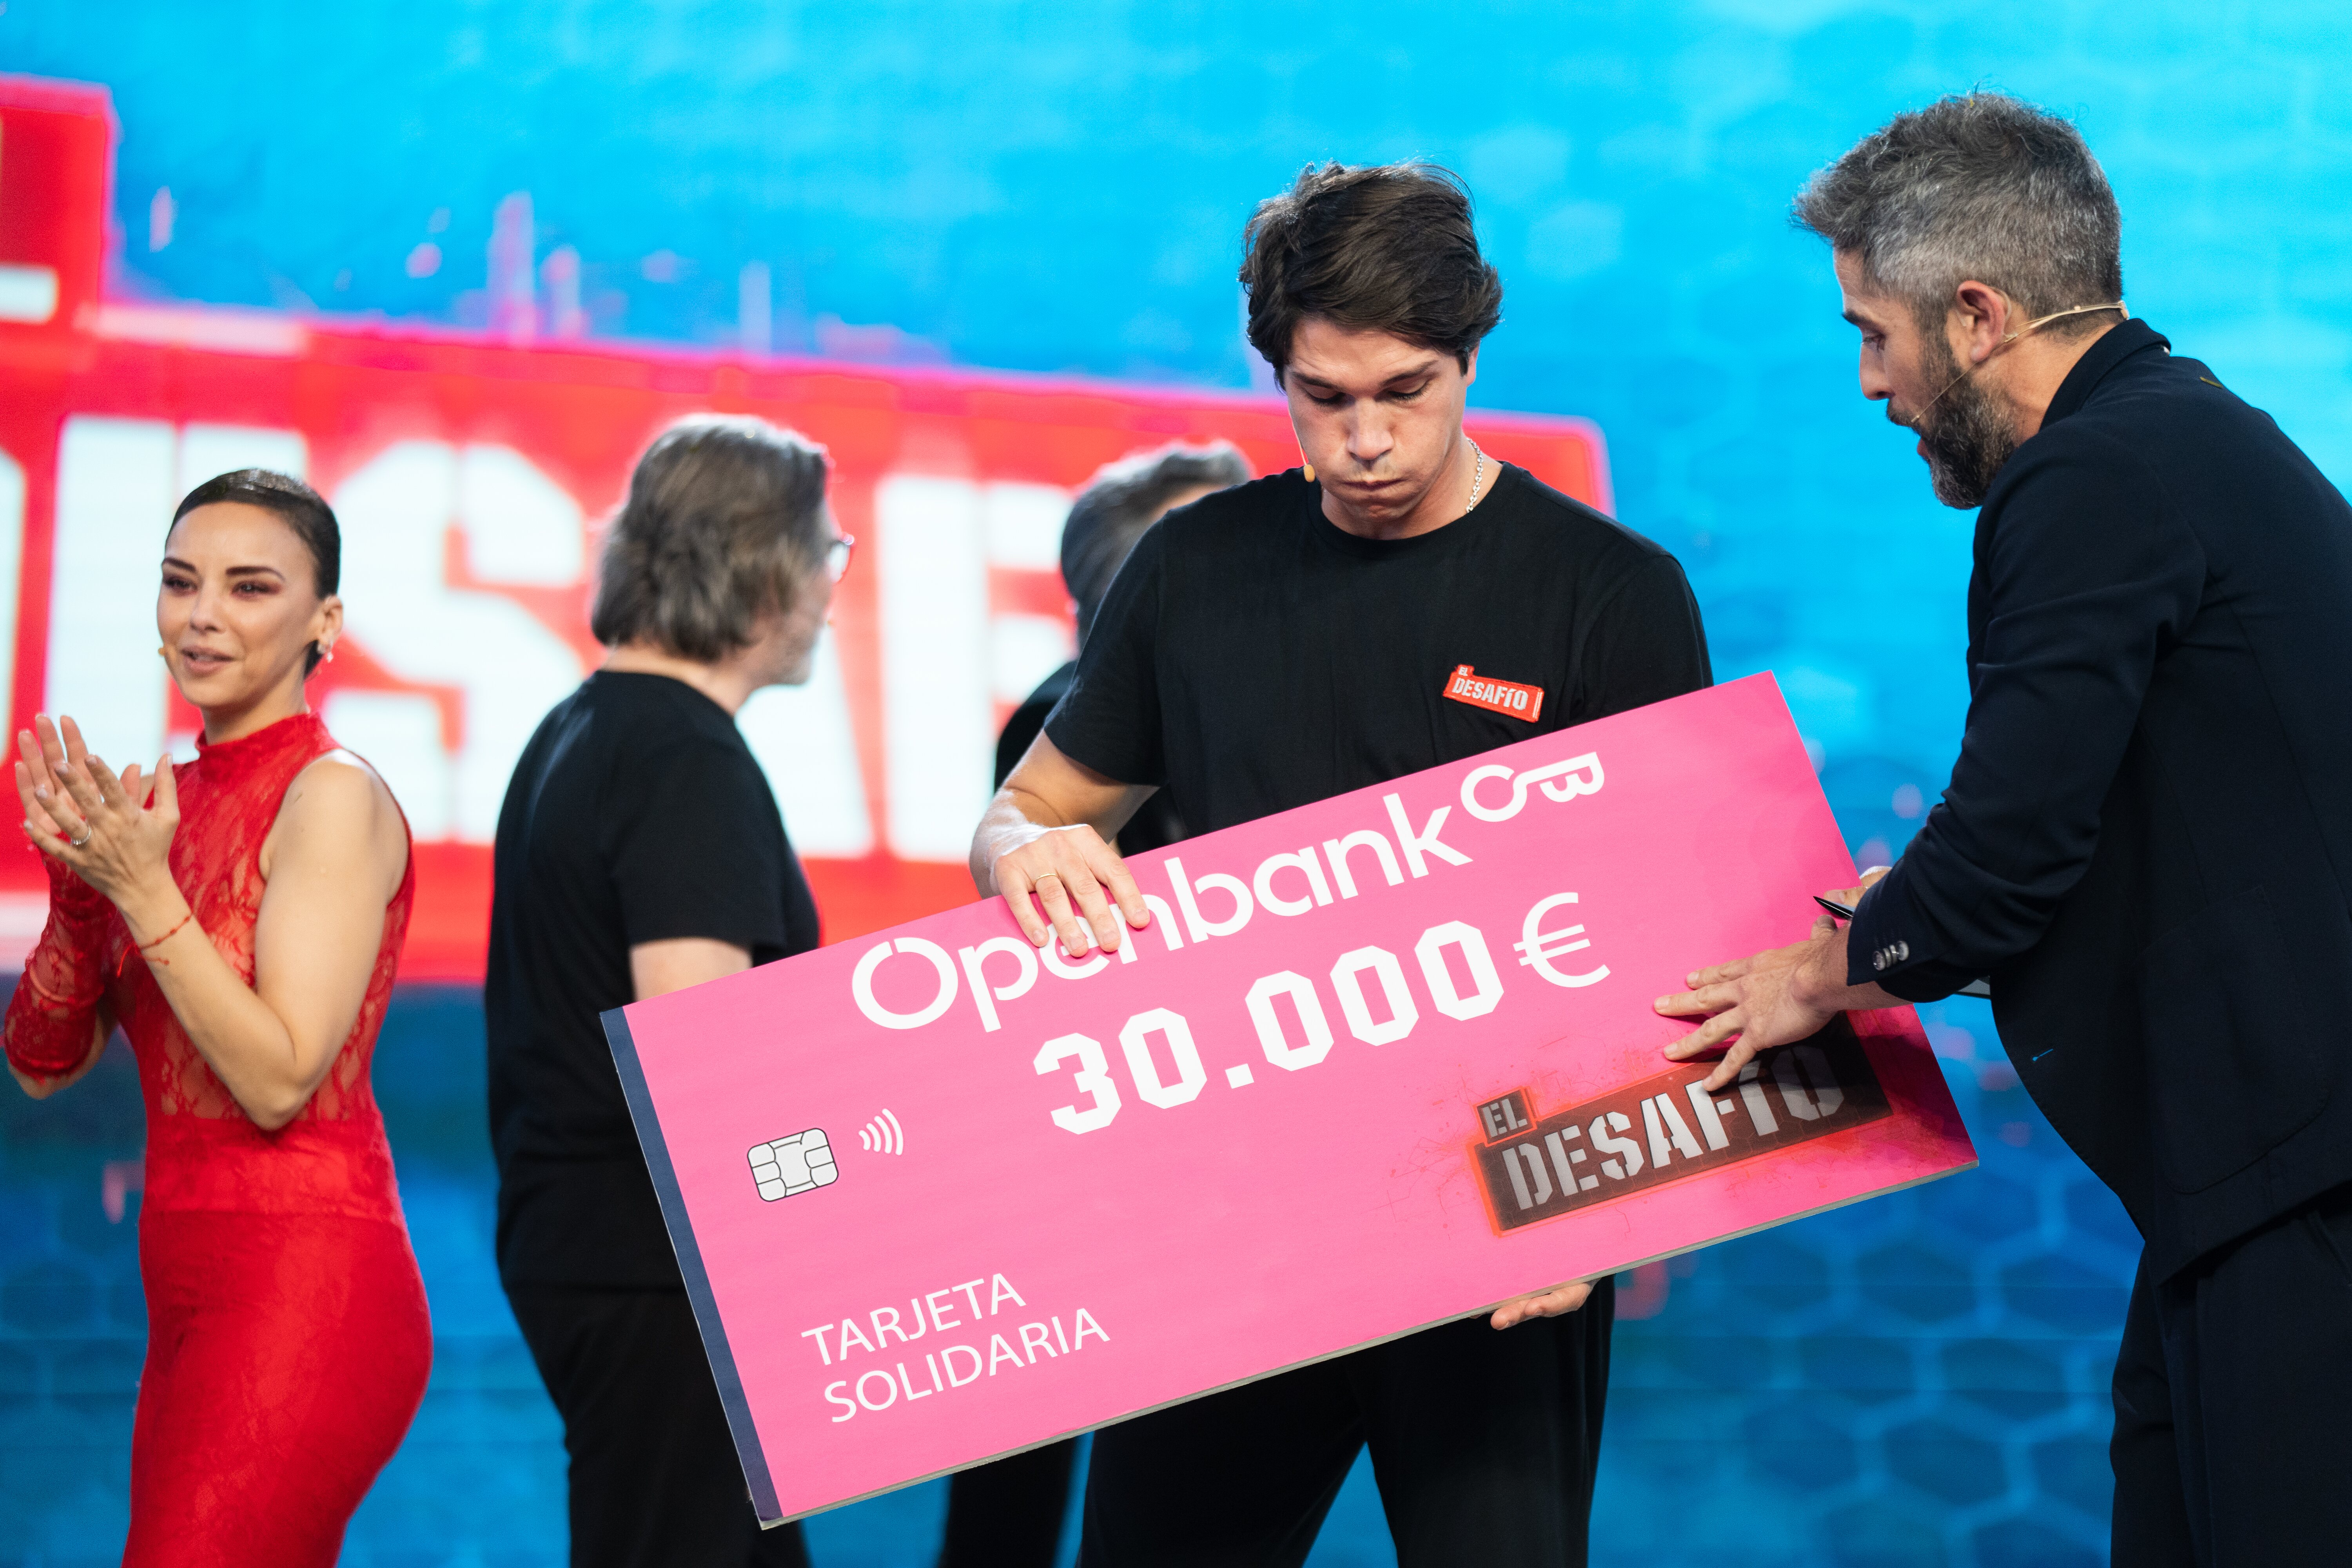 Pablo Castellano repartió los 30.000 euros del premio con sus compañeros | Foto: Atresmedia